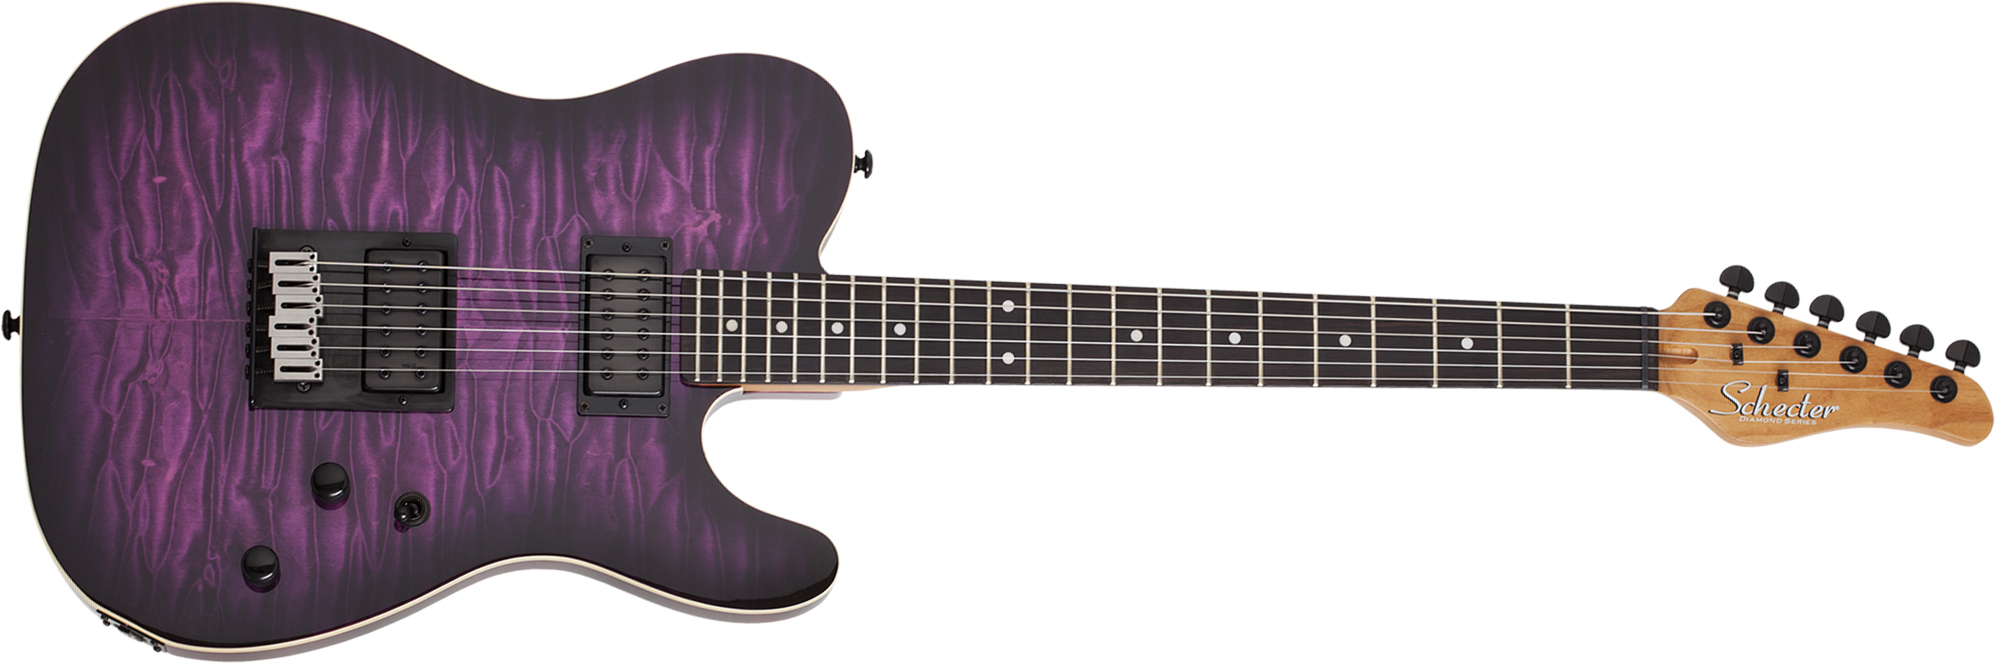 Schecter Pt Pro 2h Ht Eb - Trans Purple Burst - Tel shape electric guitar - Main picture